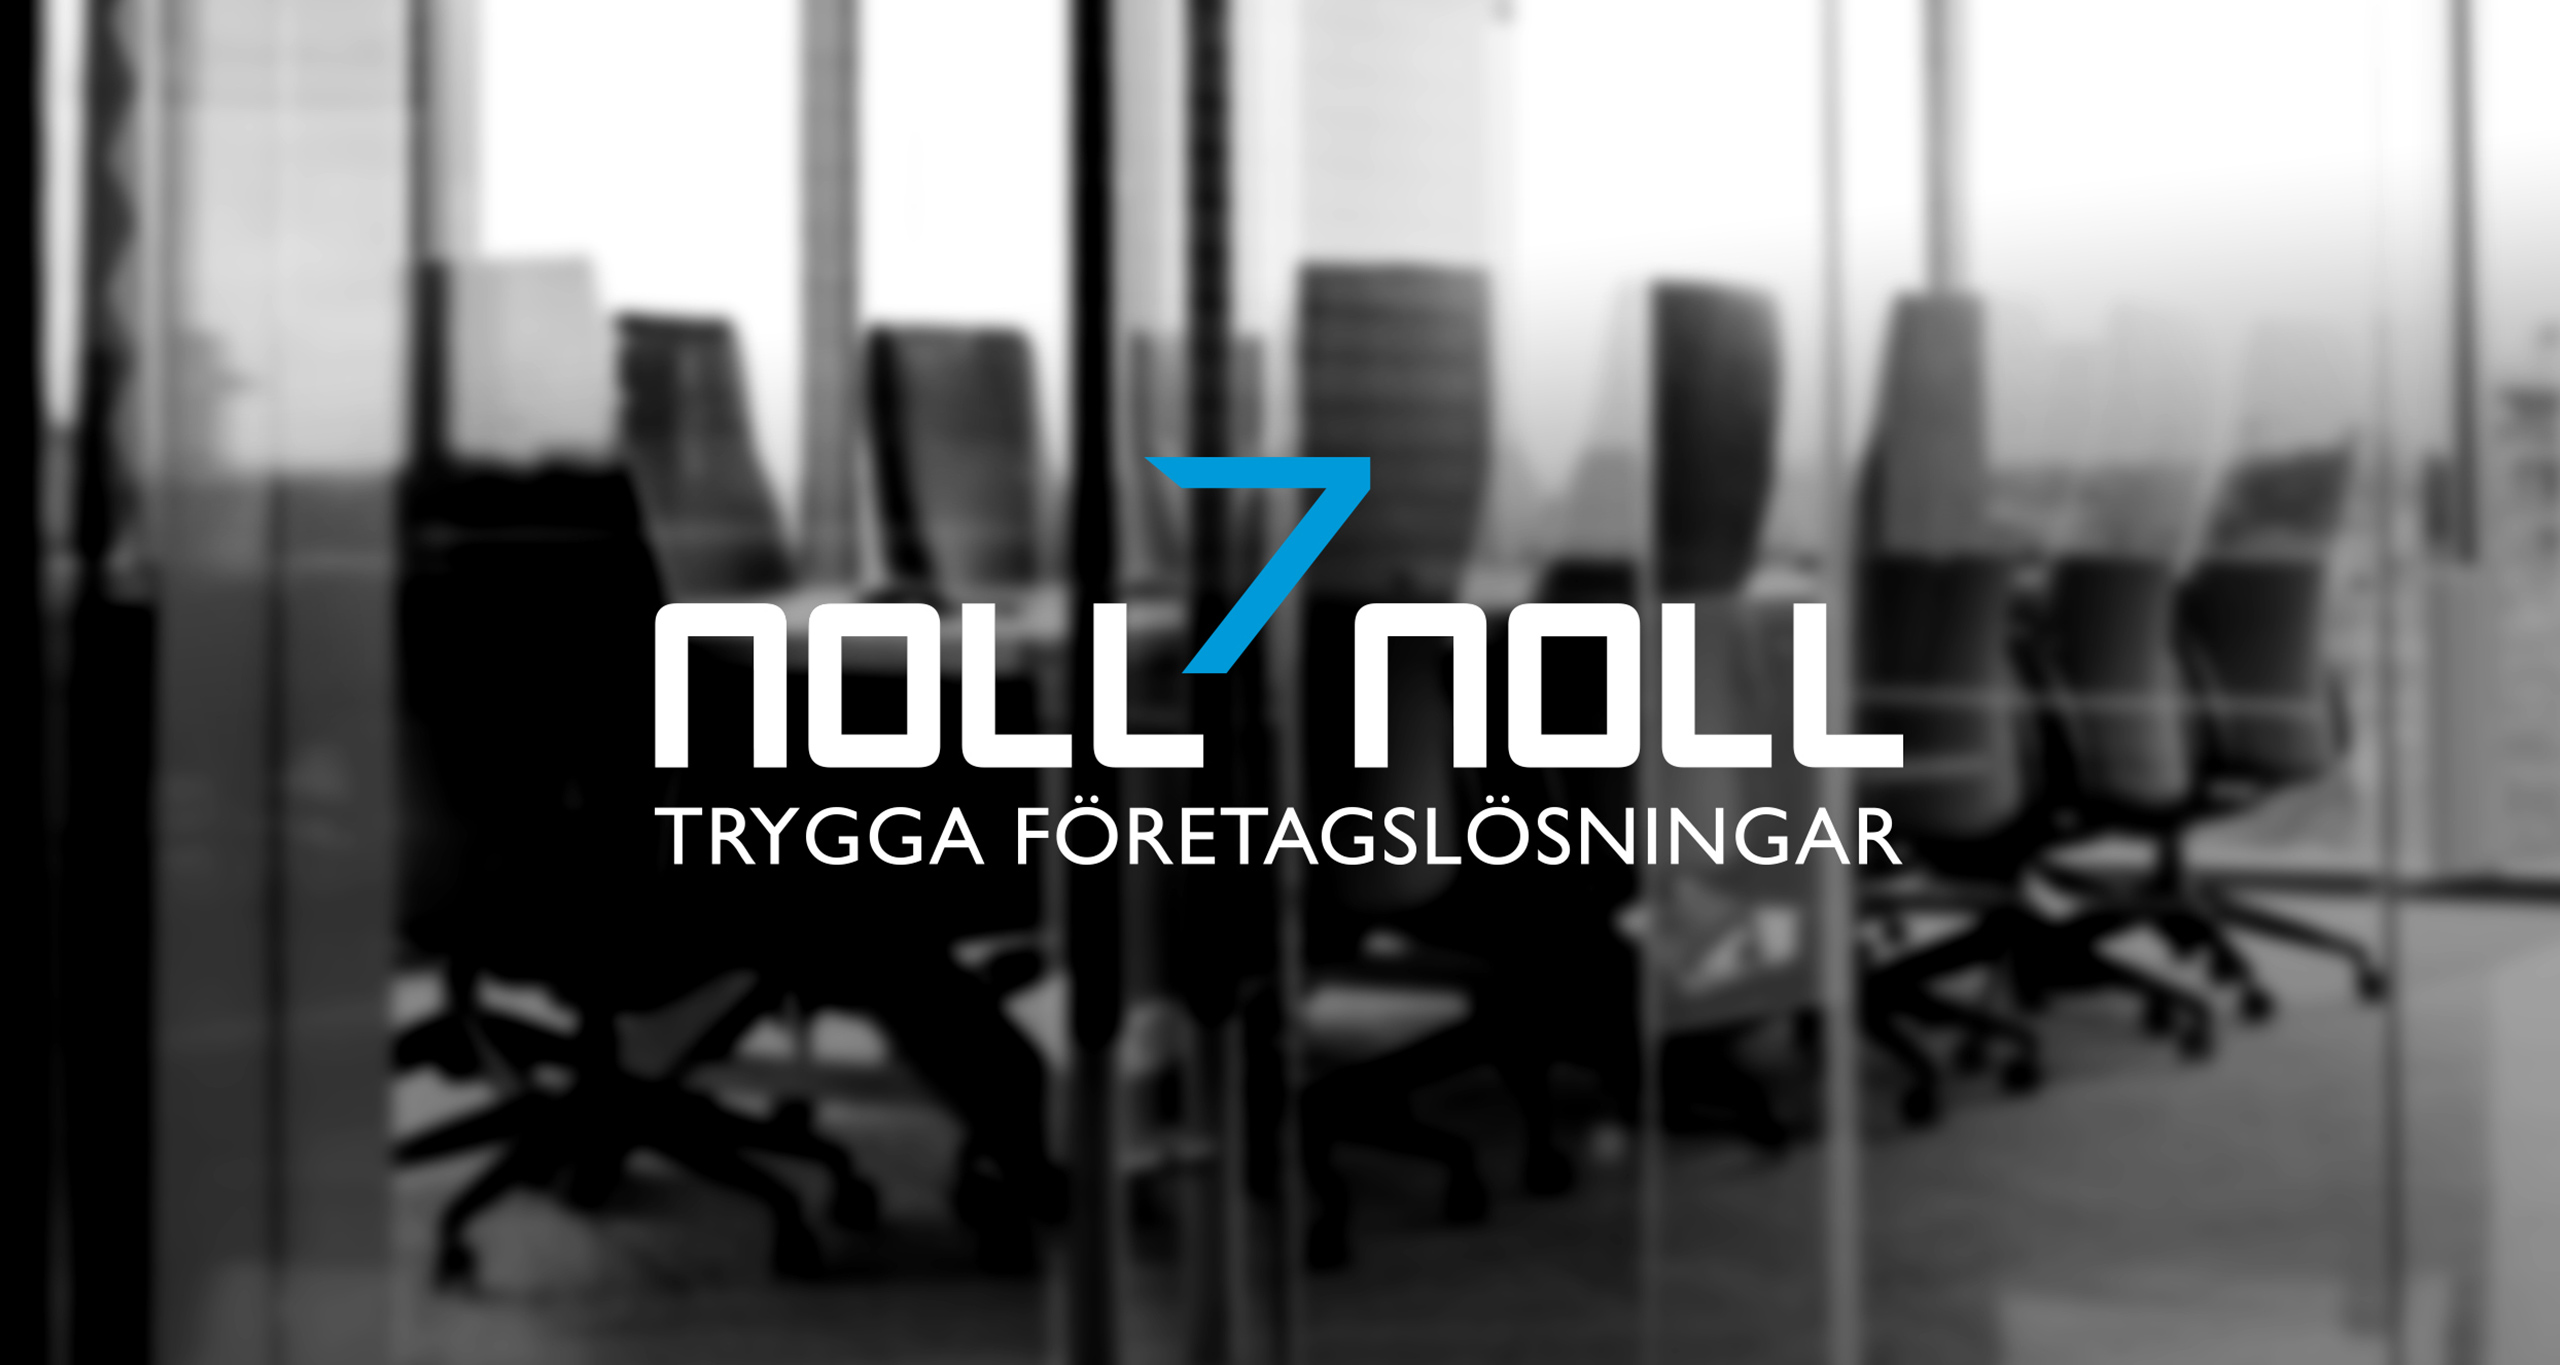 Noll7Noll